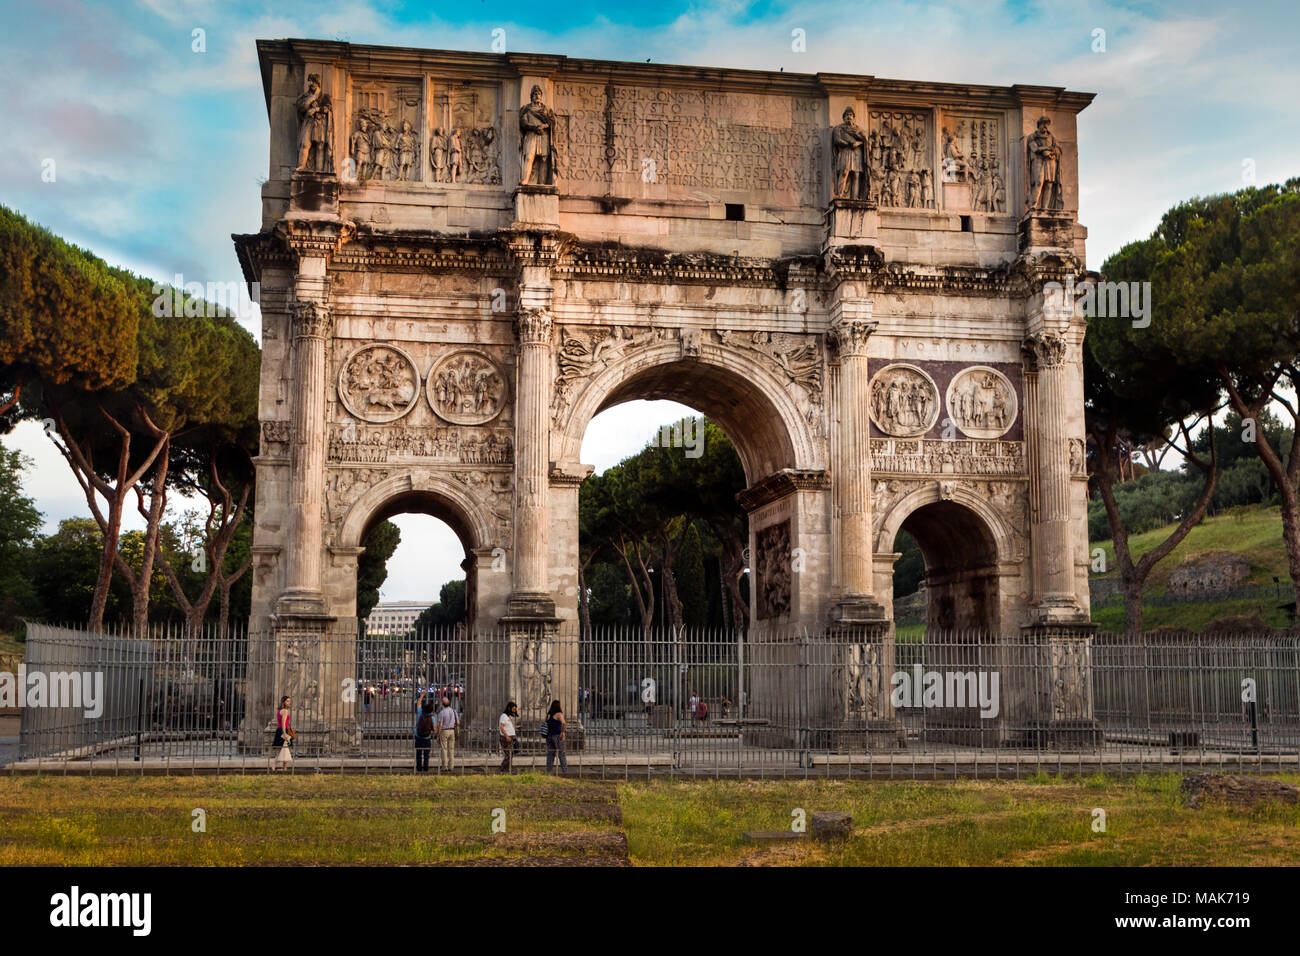 L'Arc de Constantin dans le Forum, Rome, flanqué de Rome, pins laricio symbolique, c'est le plus grand arc de triomphe romain Banque D'Images